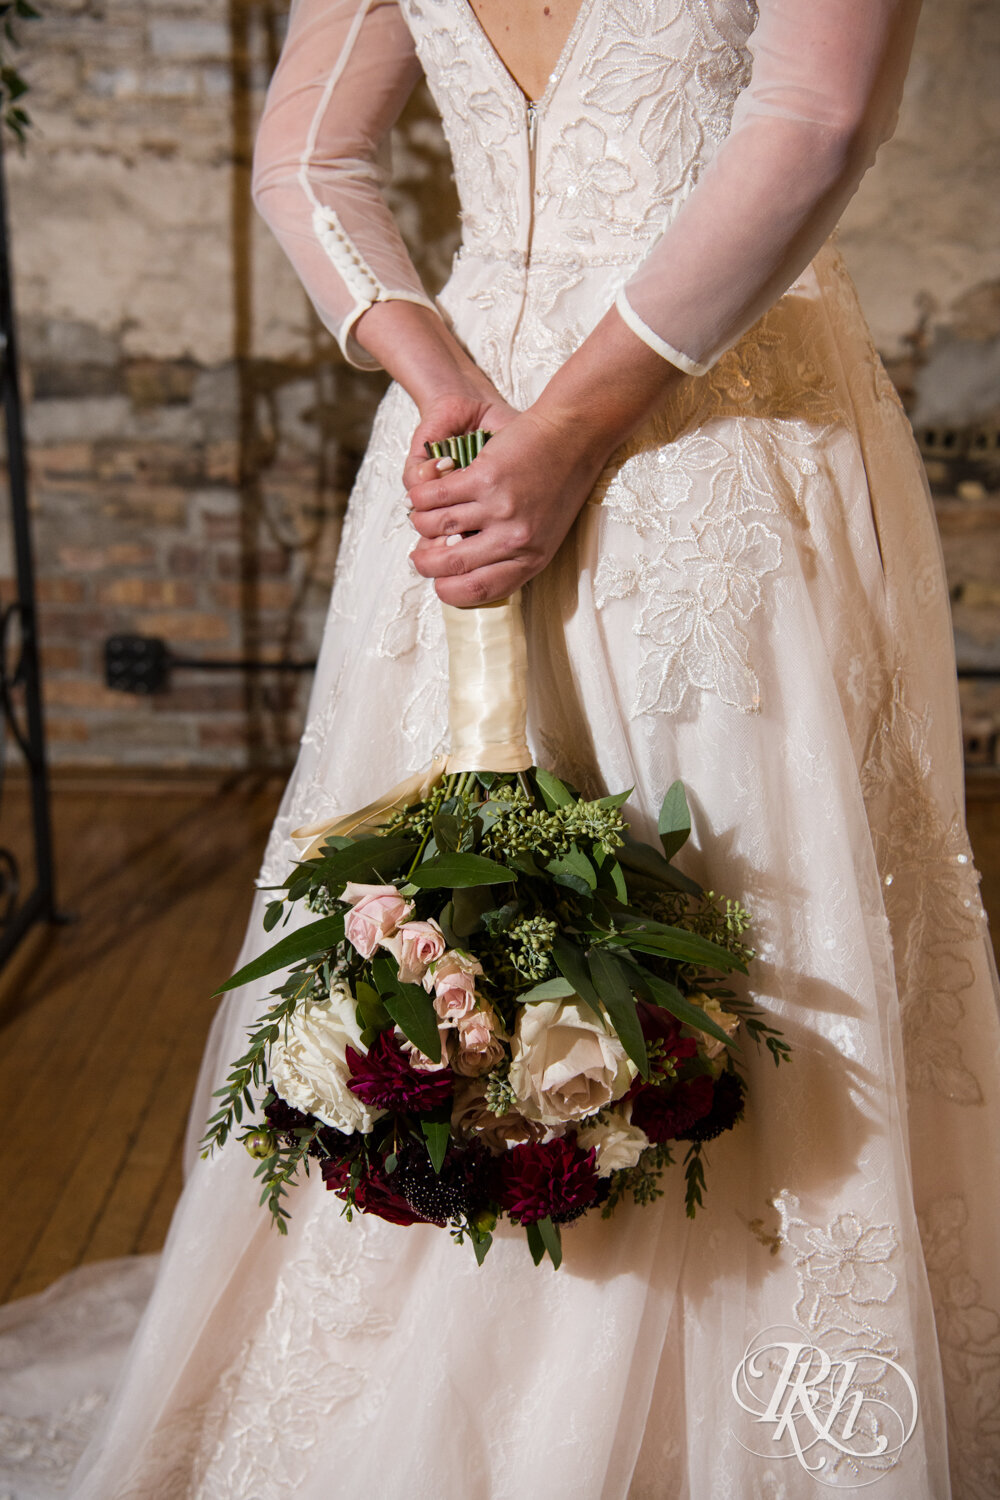 Bride holds flowers at Kellerman's Event Center in White Bear Lake, Minnesota.